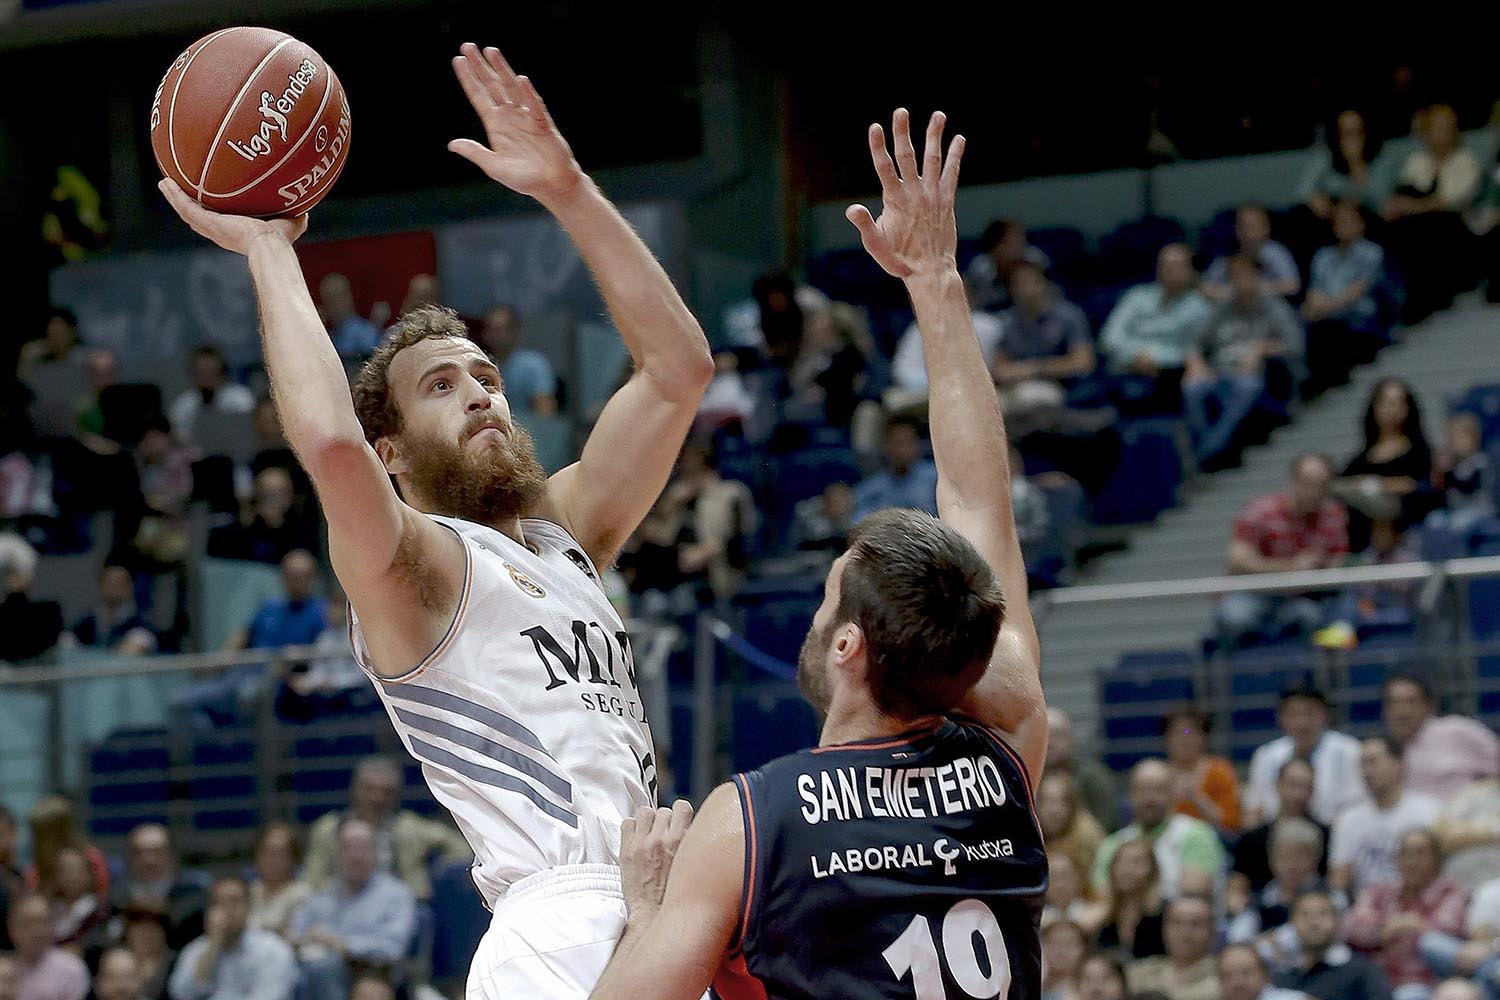 El Real Madrid de baloncesto se mantiene como líder de la Liga ACB tras vencer al Laboral Kutxa